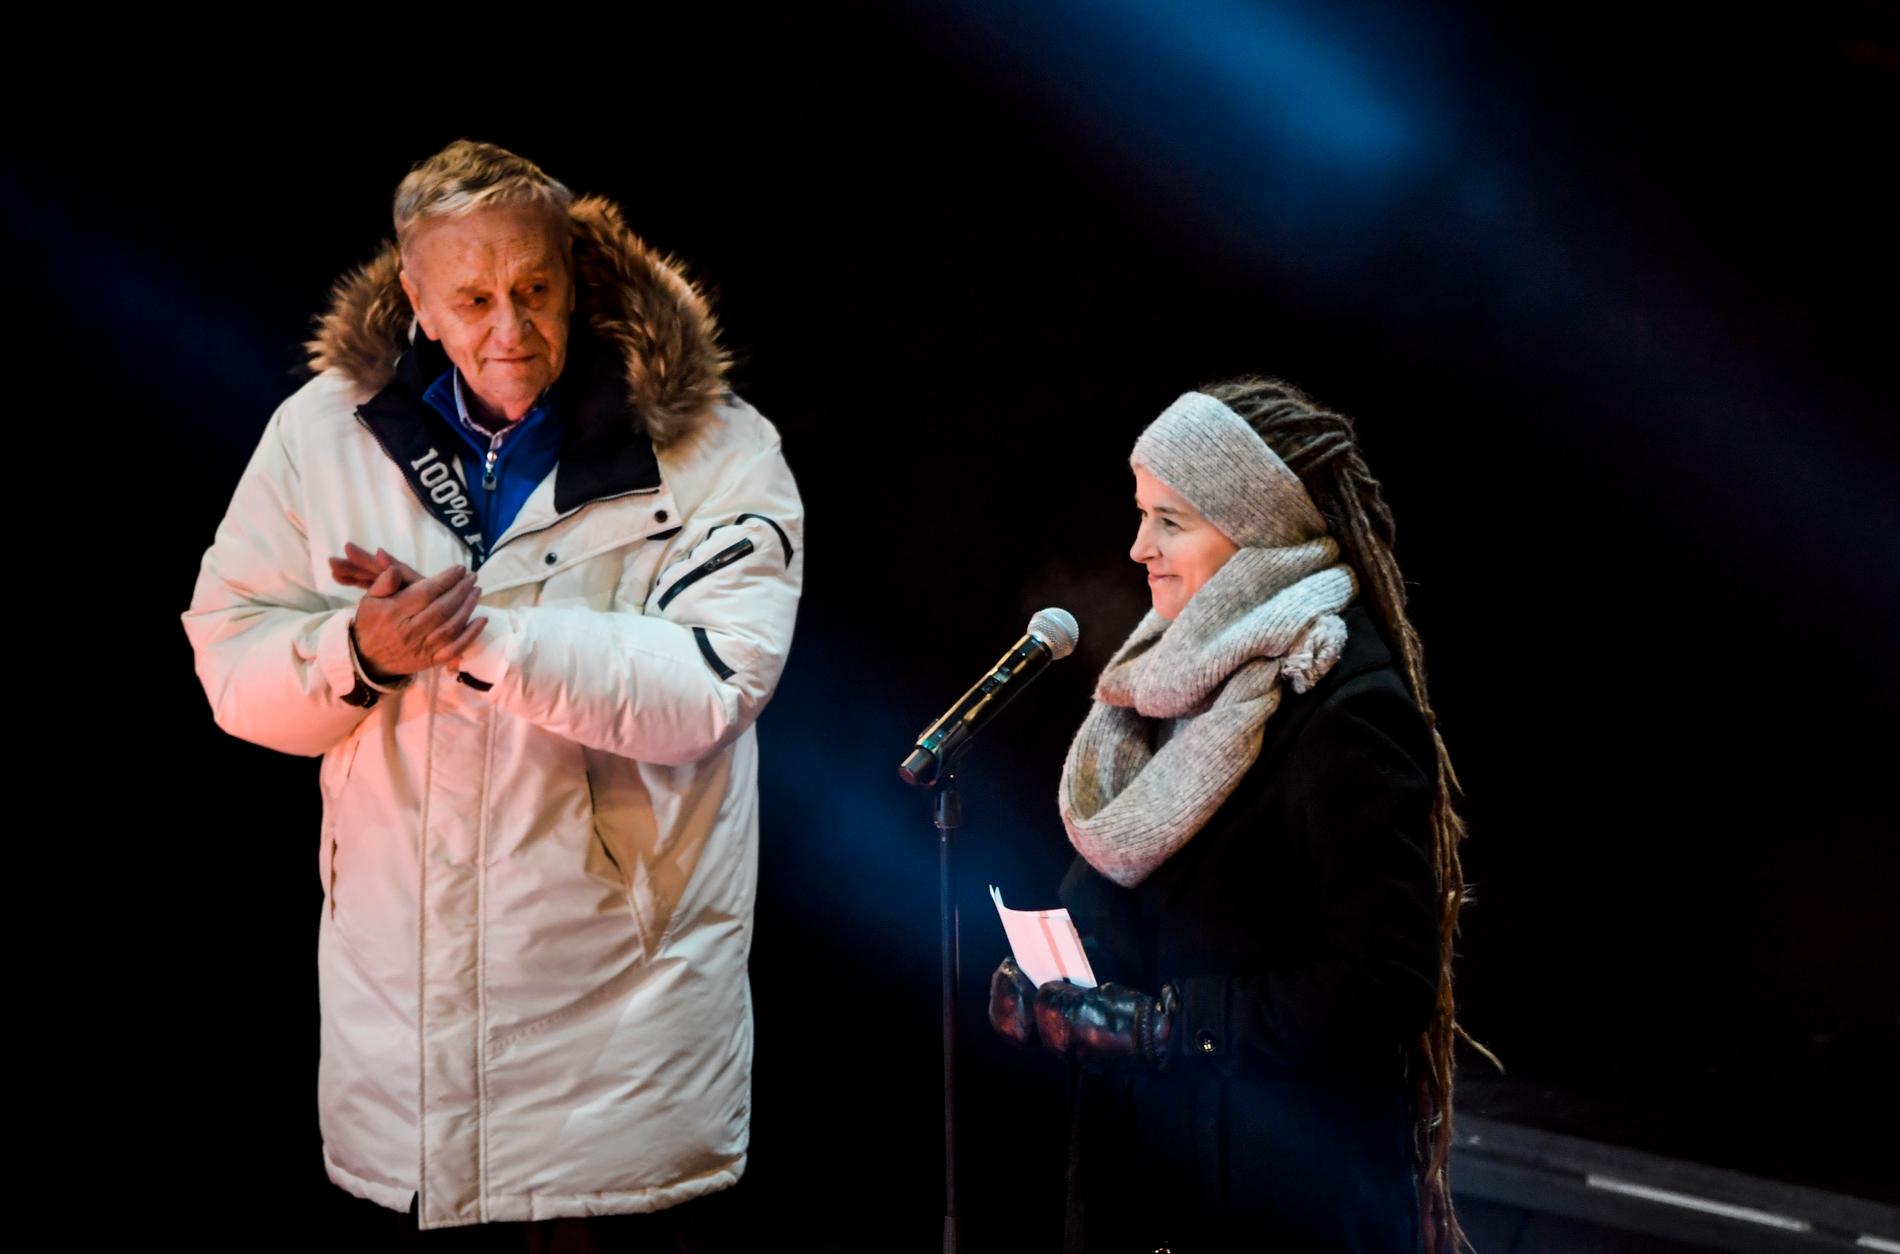 Sveriges kulturminister Amanda Lind och Gian-Franco Kasper, ordförande i FIS, under invigningen av alpina VM 2019 i Åre